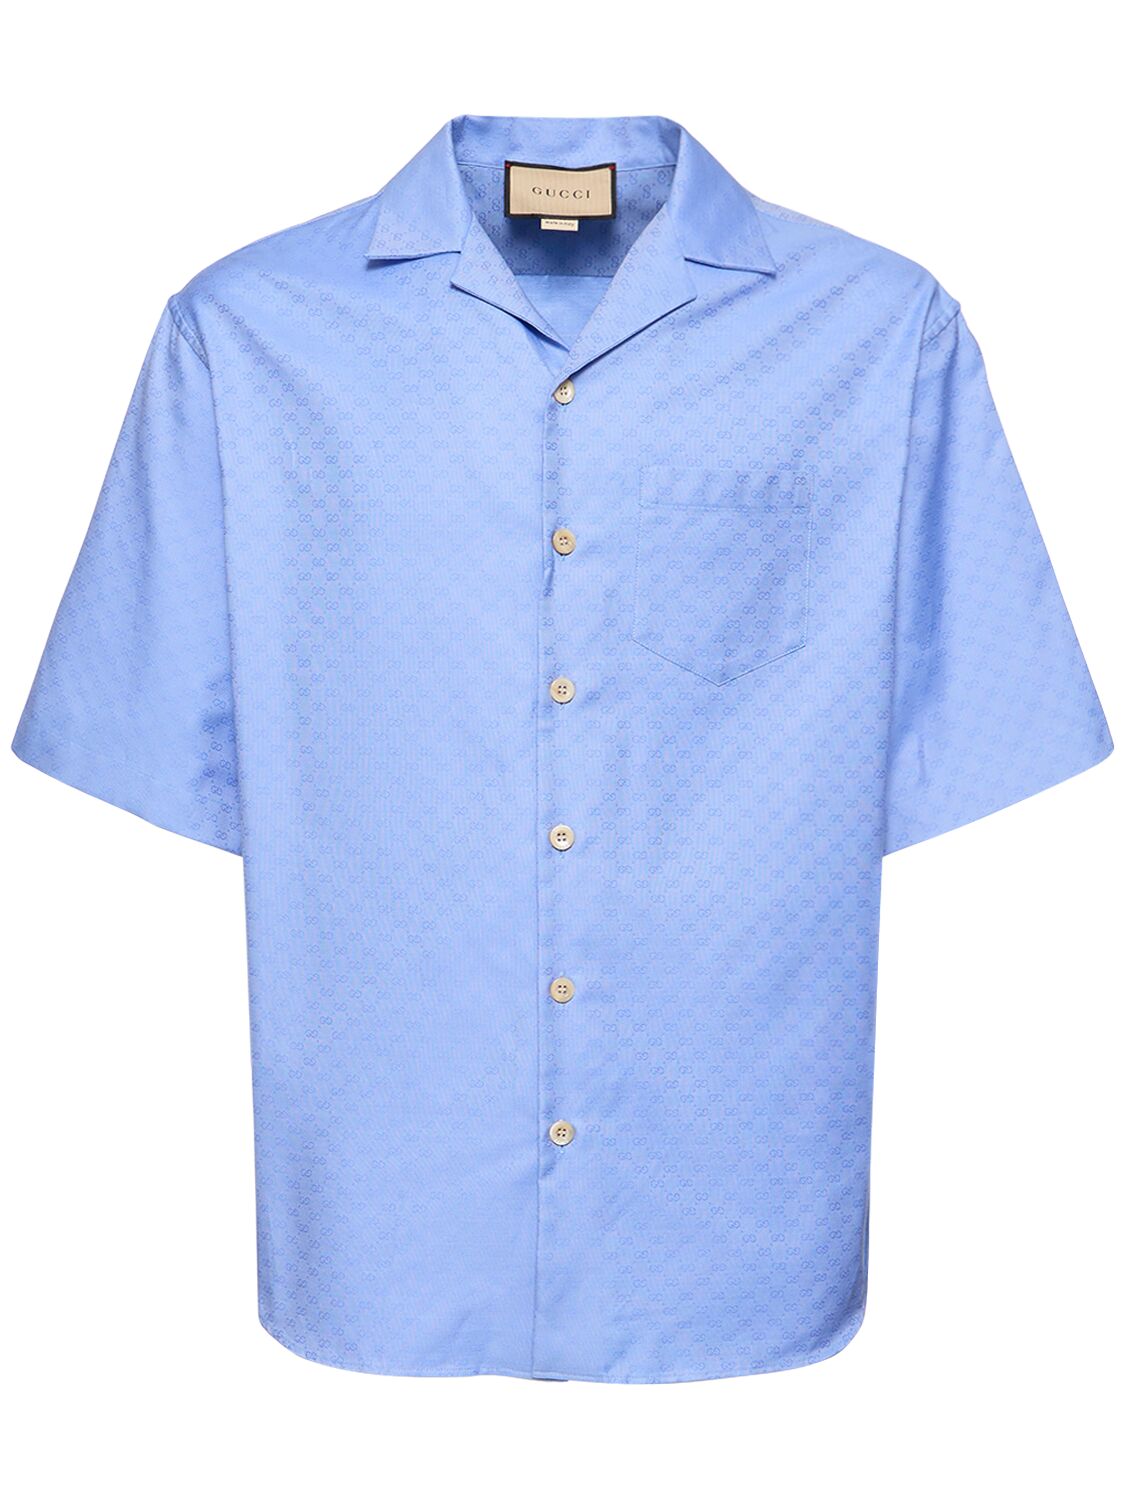 Image of Gg Mignon Oxford Cotton Shirt